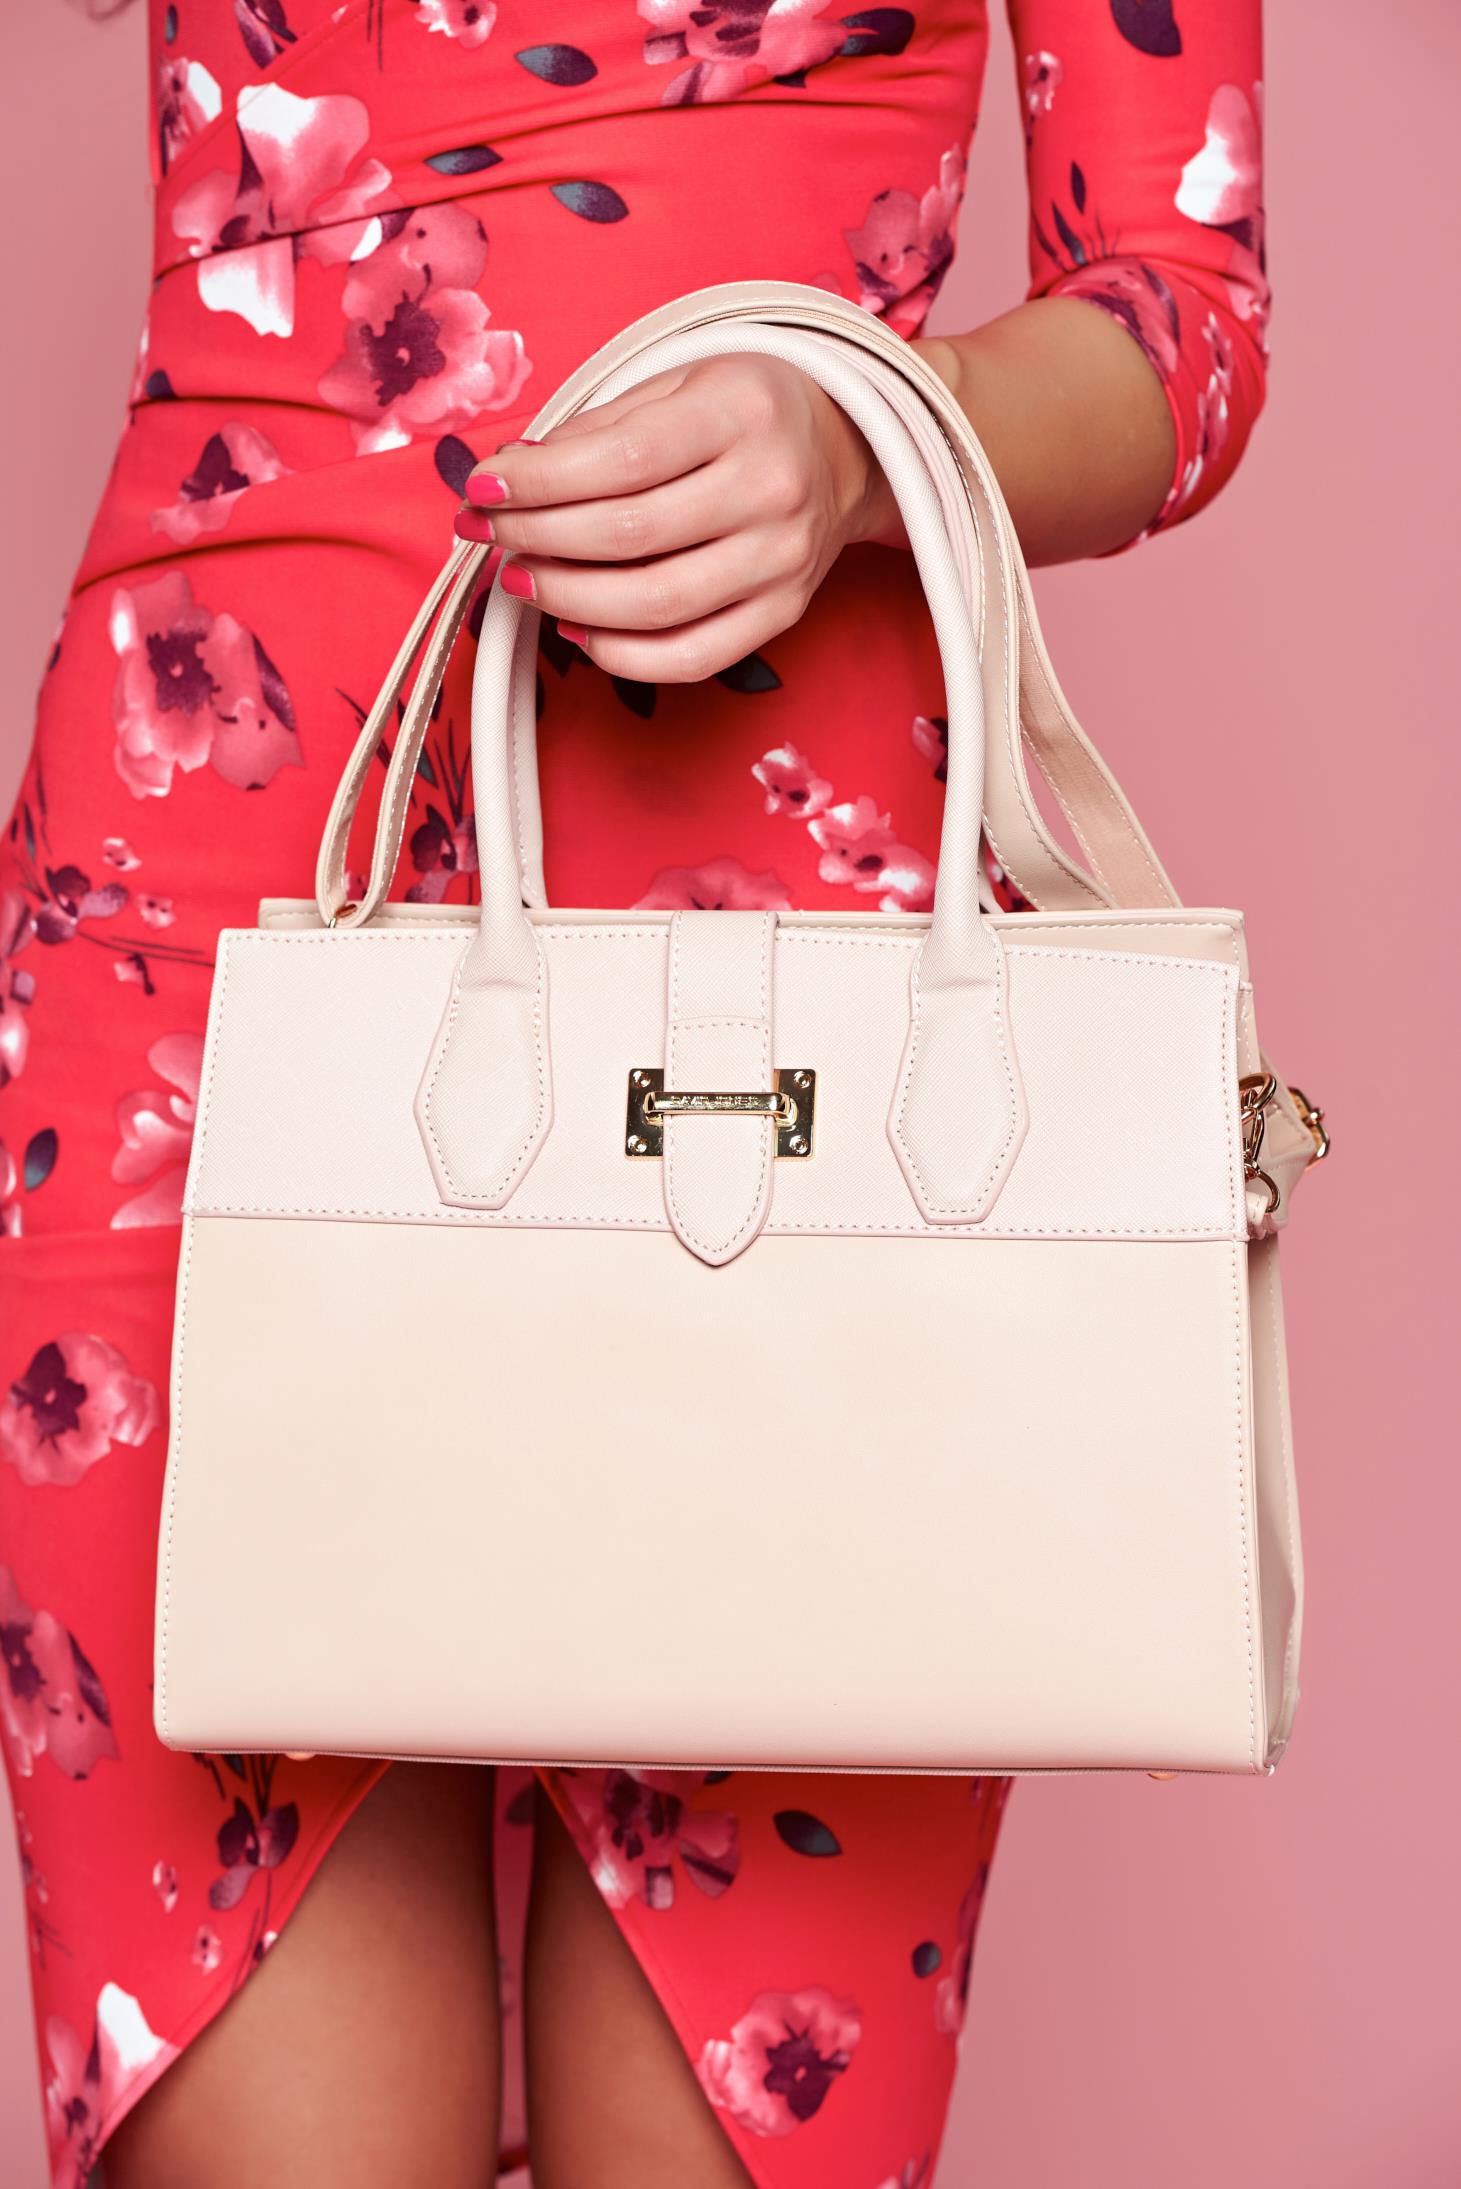 Rózsaszínű táska egy rekesz, belső zsebekkel alkalmi 1 - StarShinerS.hu